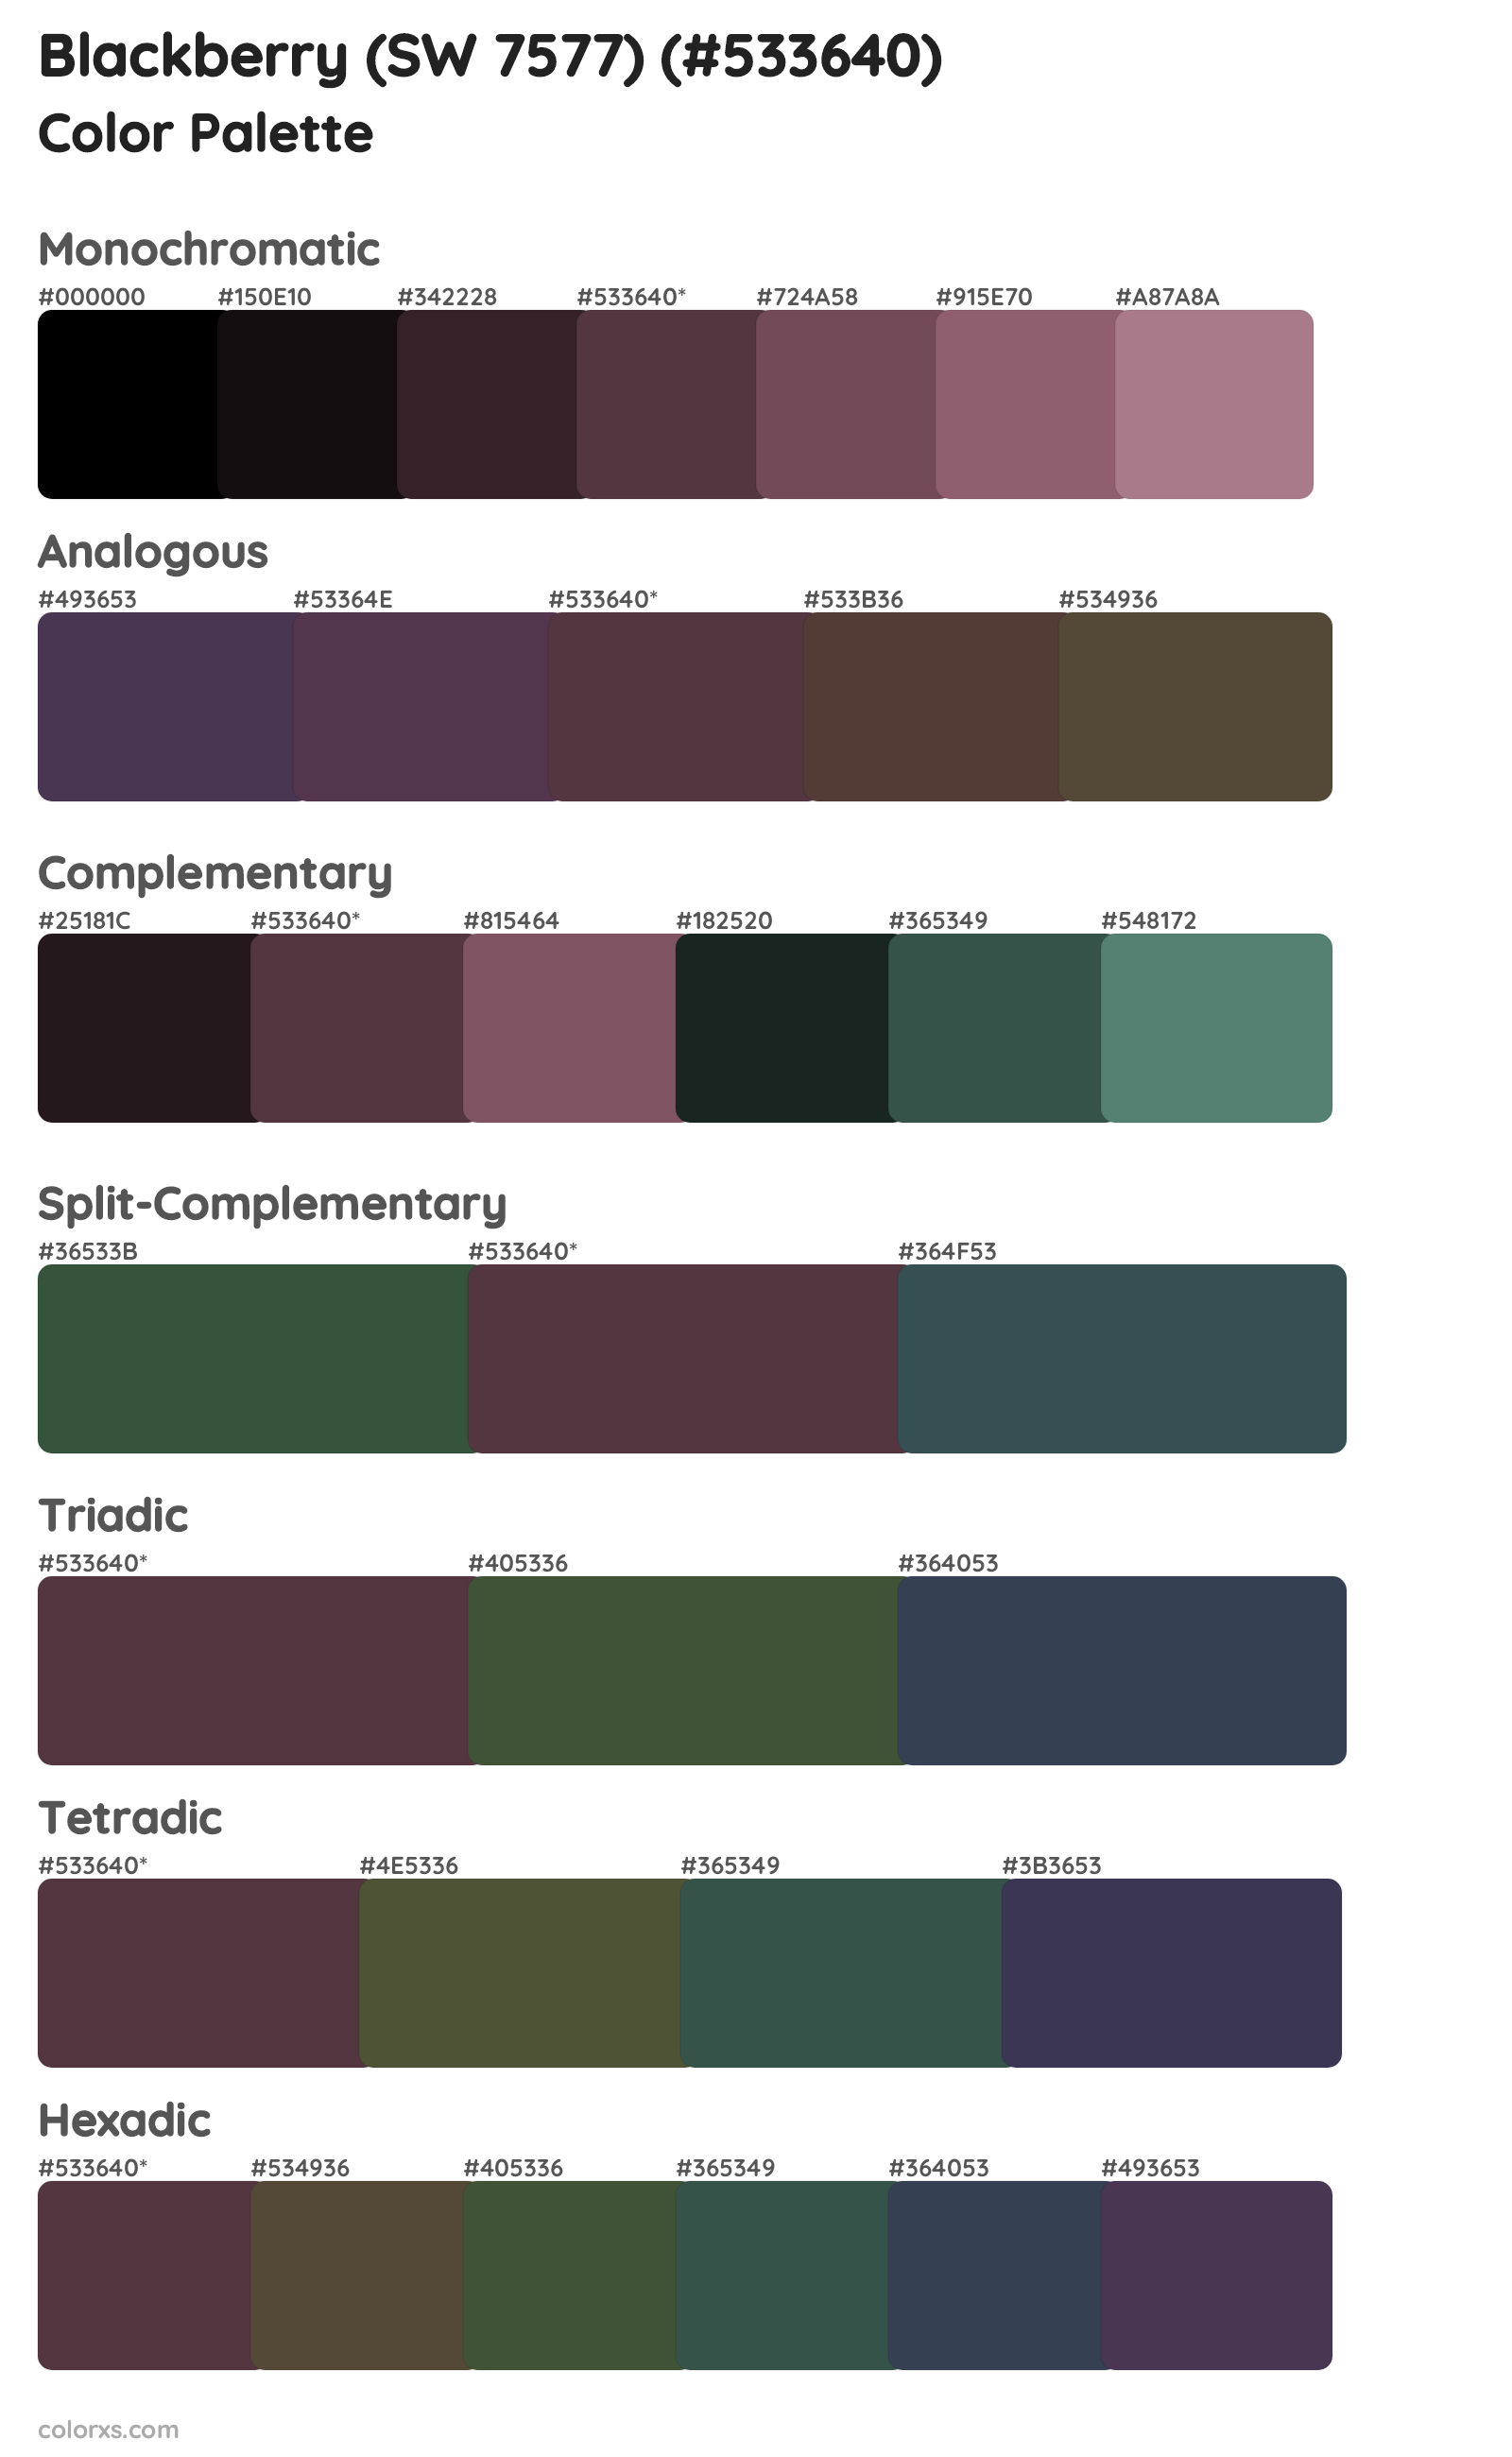 Blackberry (SW 7577) Color Scheme Palettes